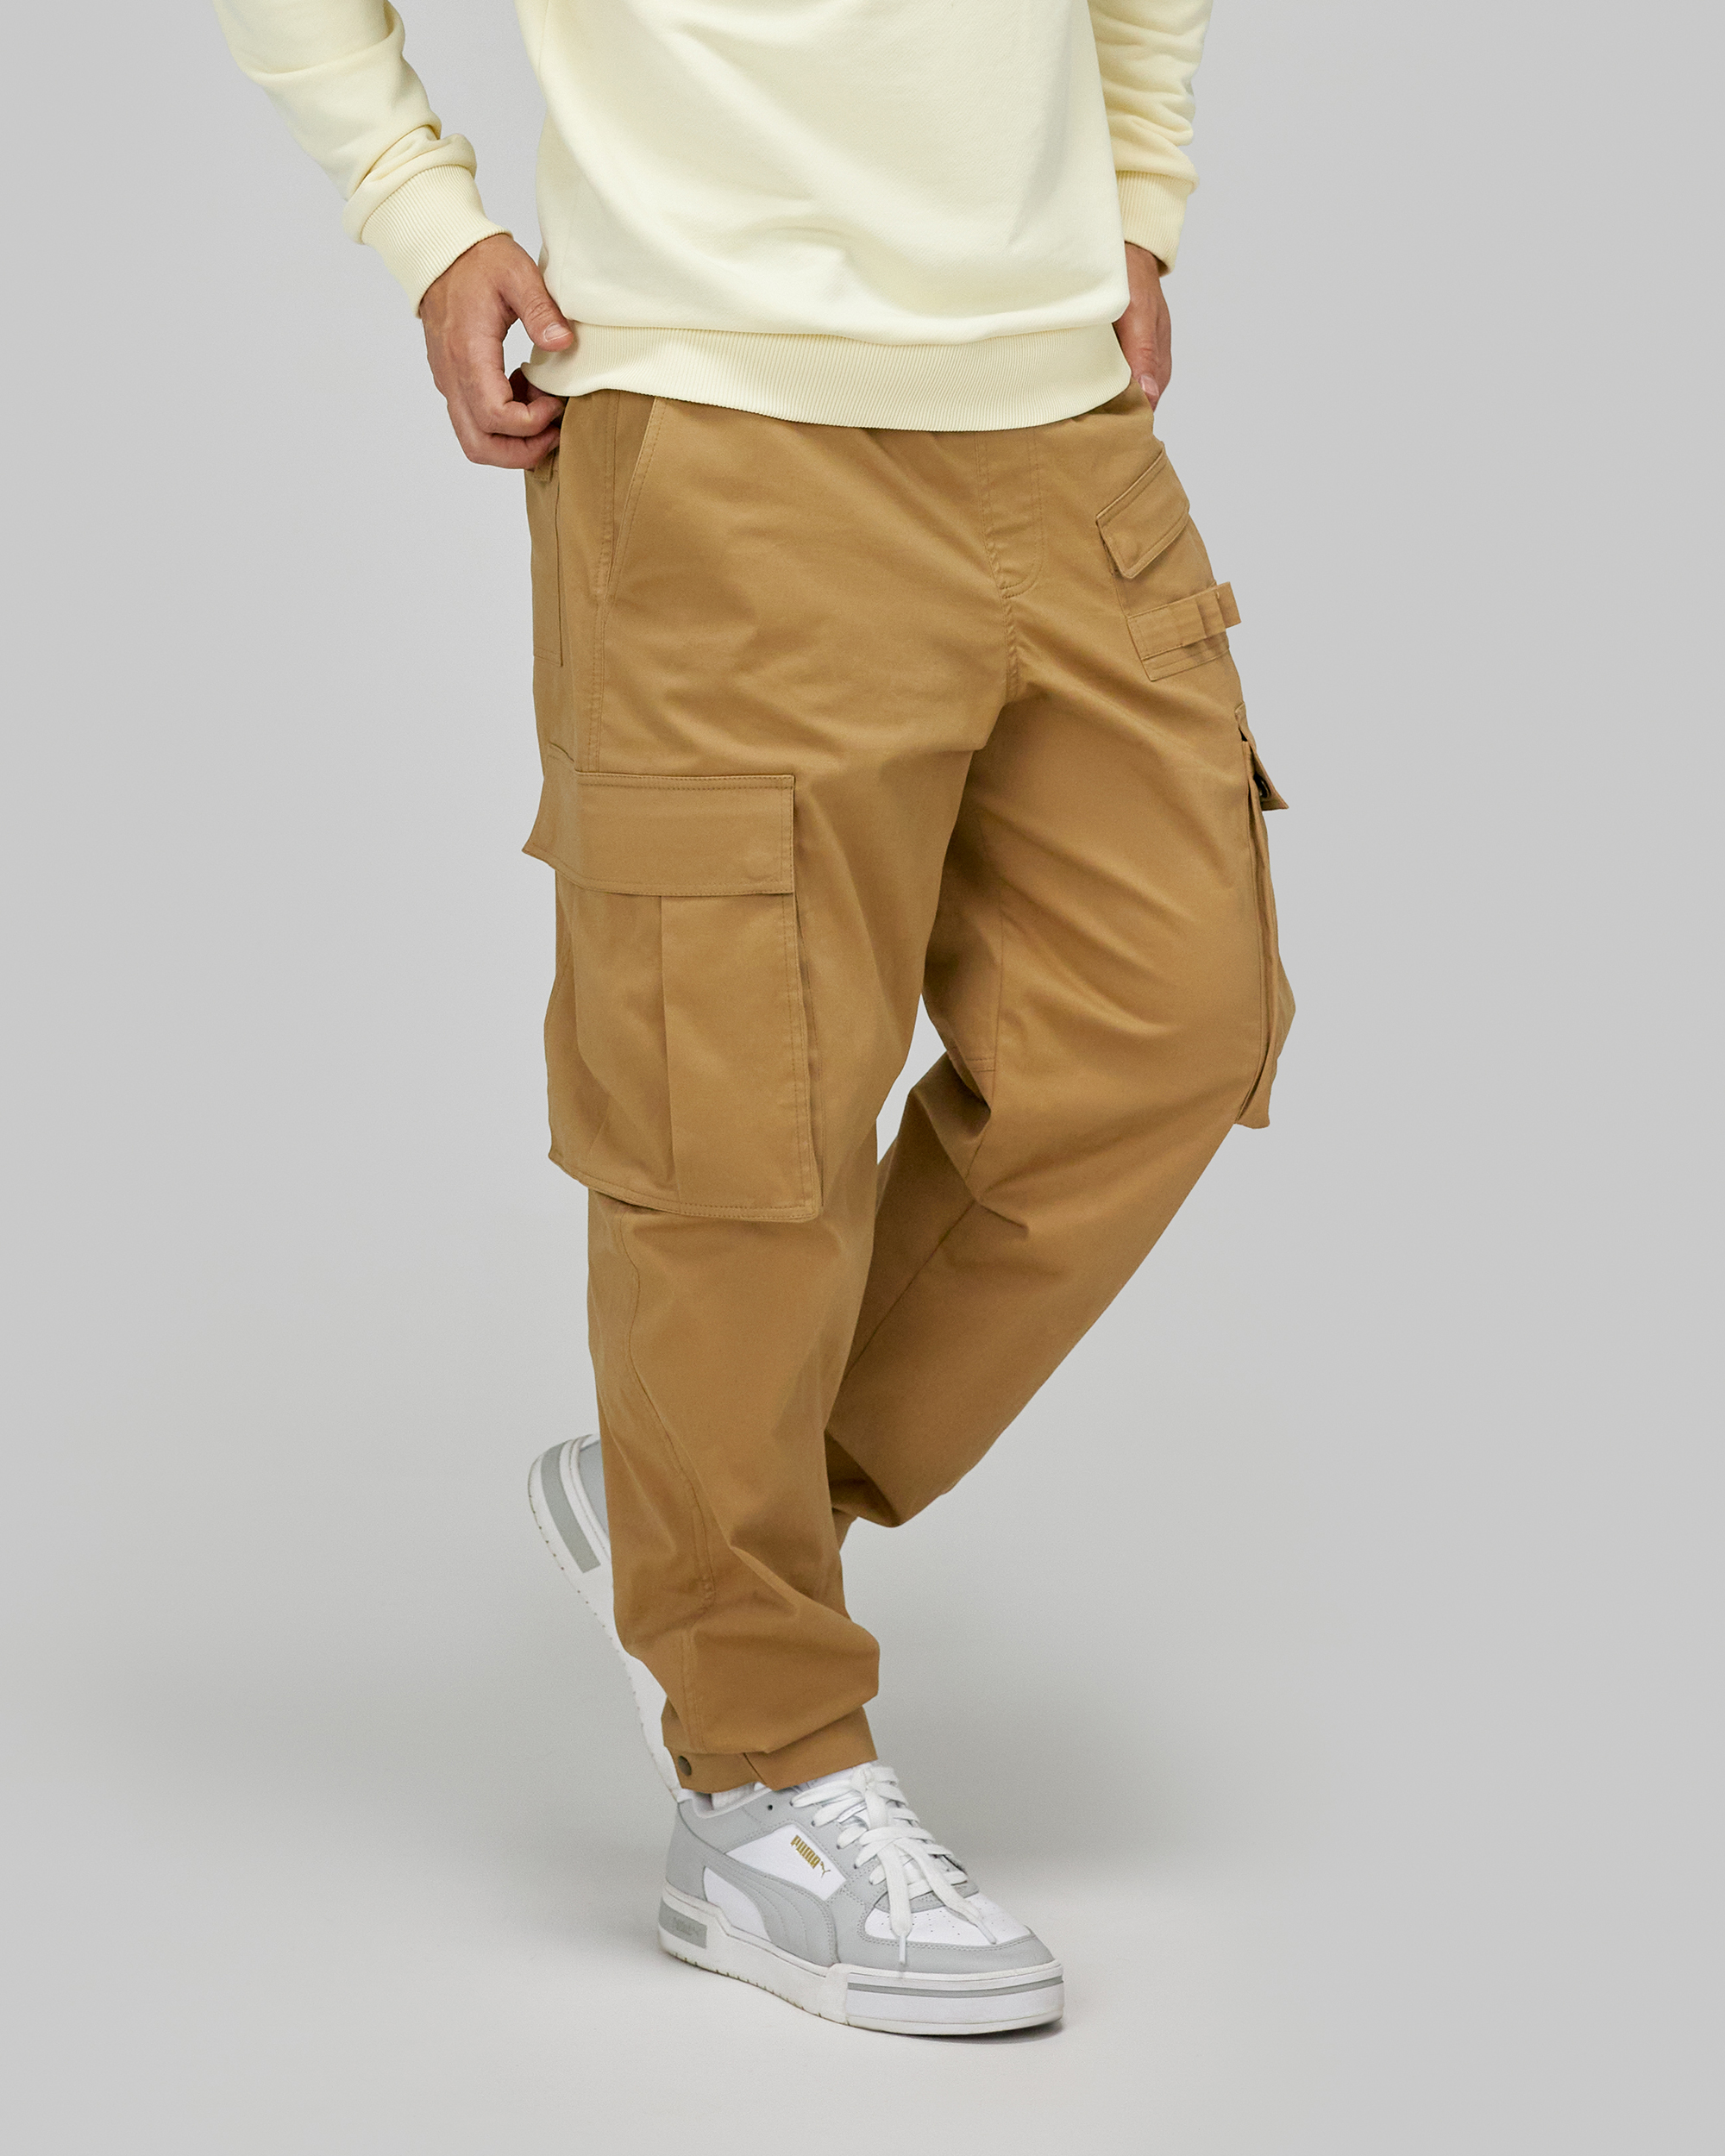 Мужские брюки, выкройка Grasser №950 – купить онлайн на сайте GRASSER,каталог выкроек с ценами